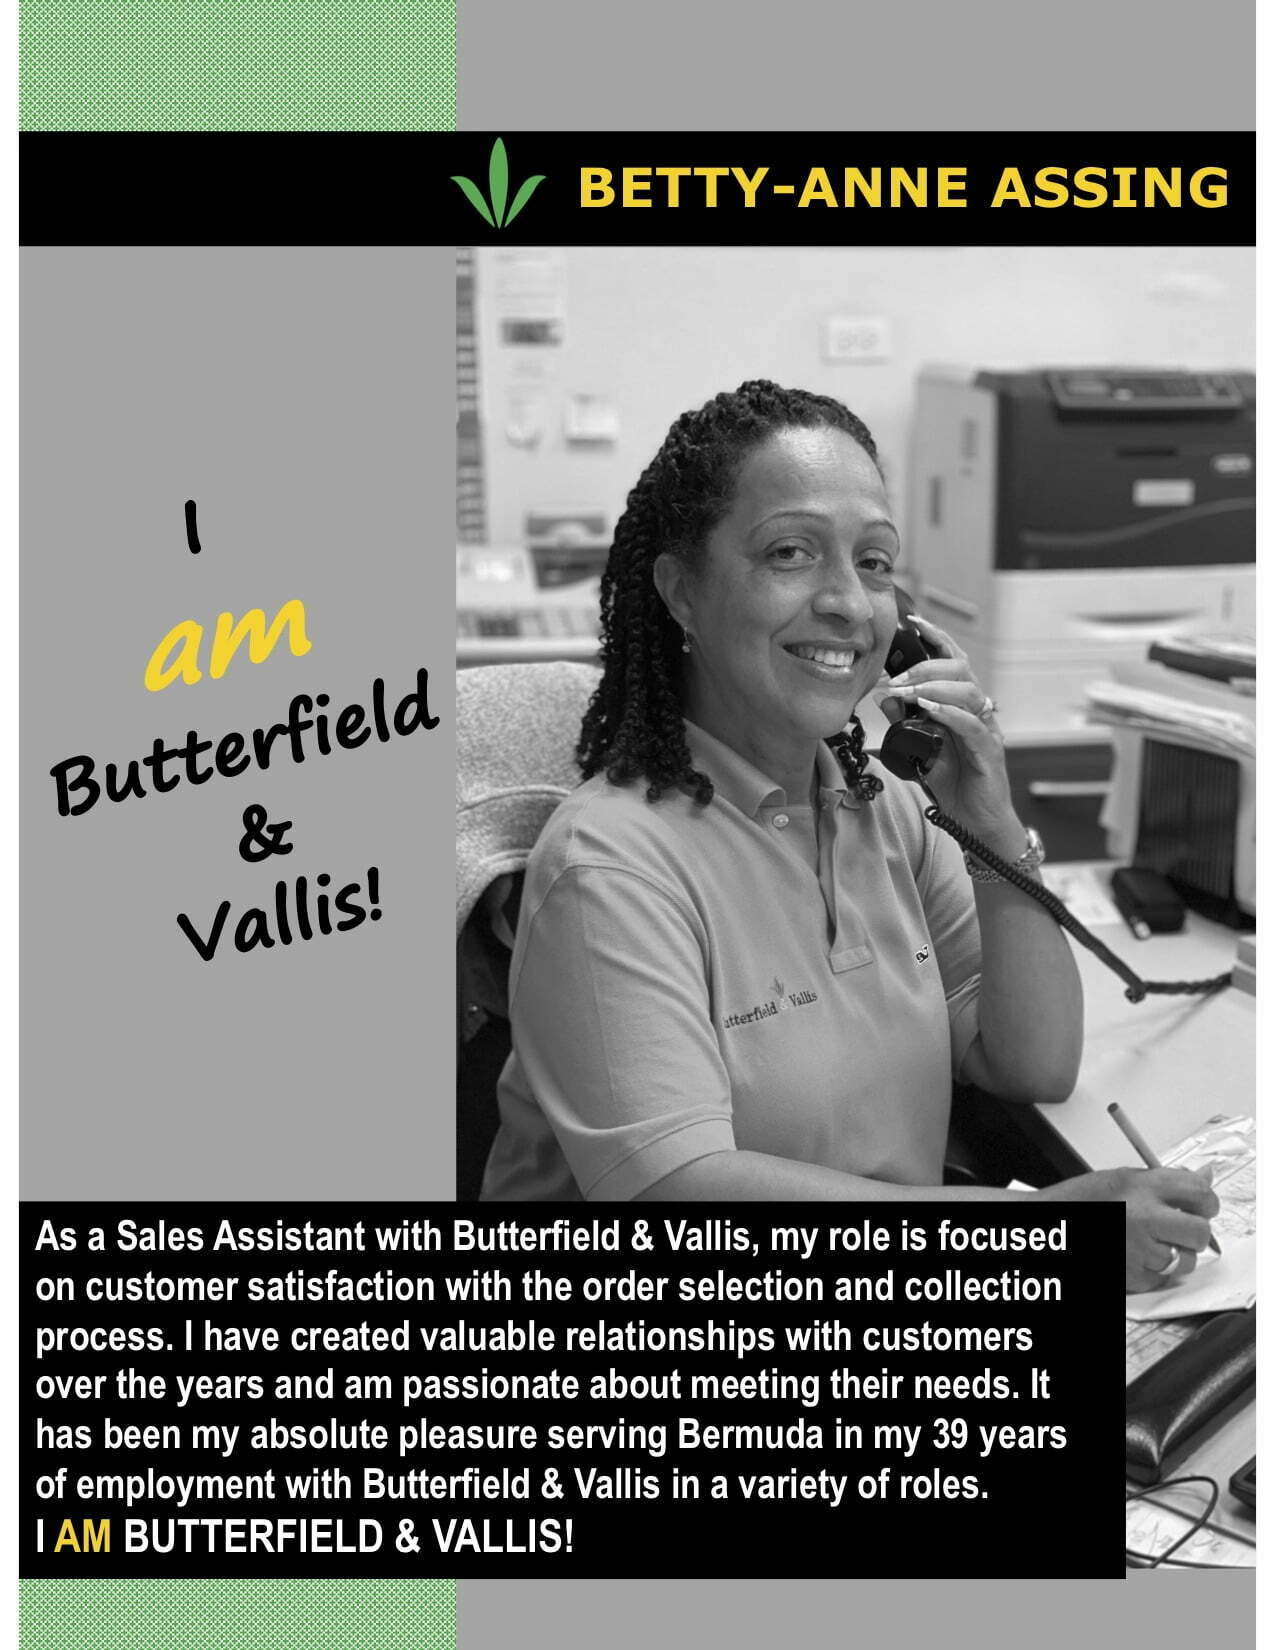 I am Butterfield & Vallis Betty-Anne Assing copy